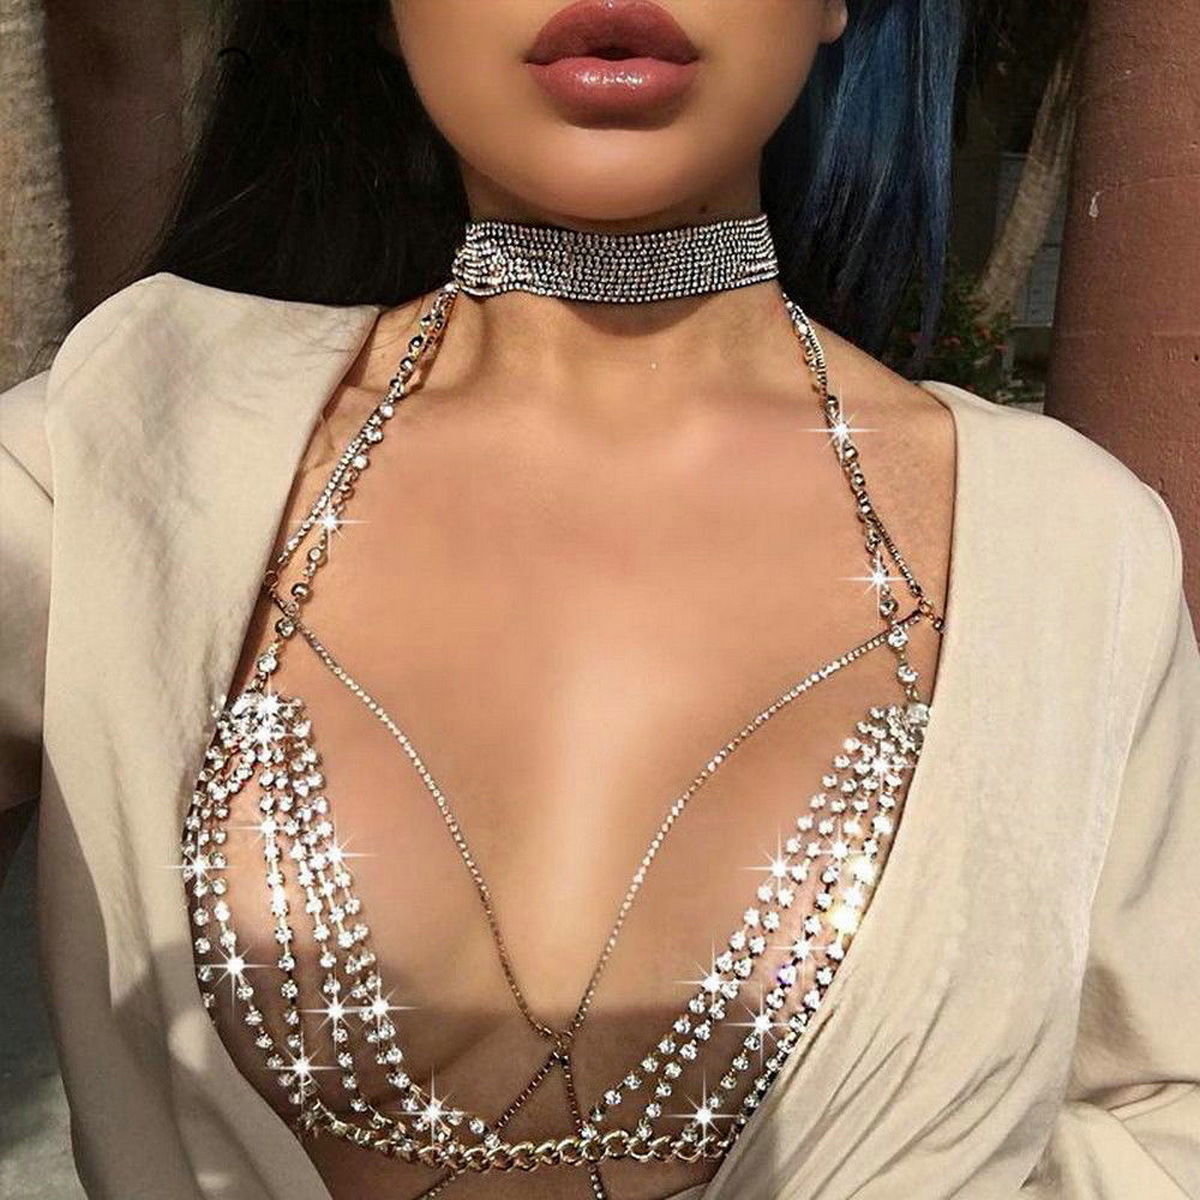 Stylish Shiny Crystal Rhinestone Bra Chest Body Chain Harness Necklace  Jewelry 